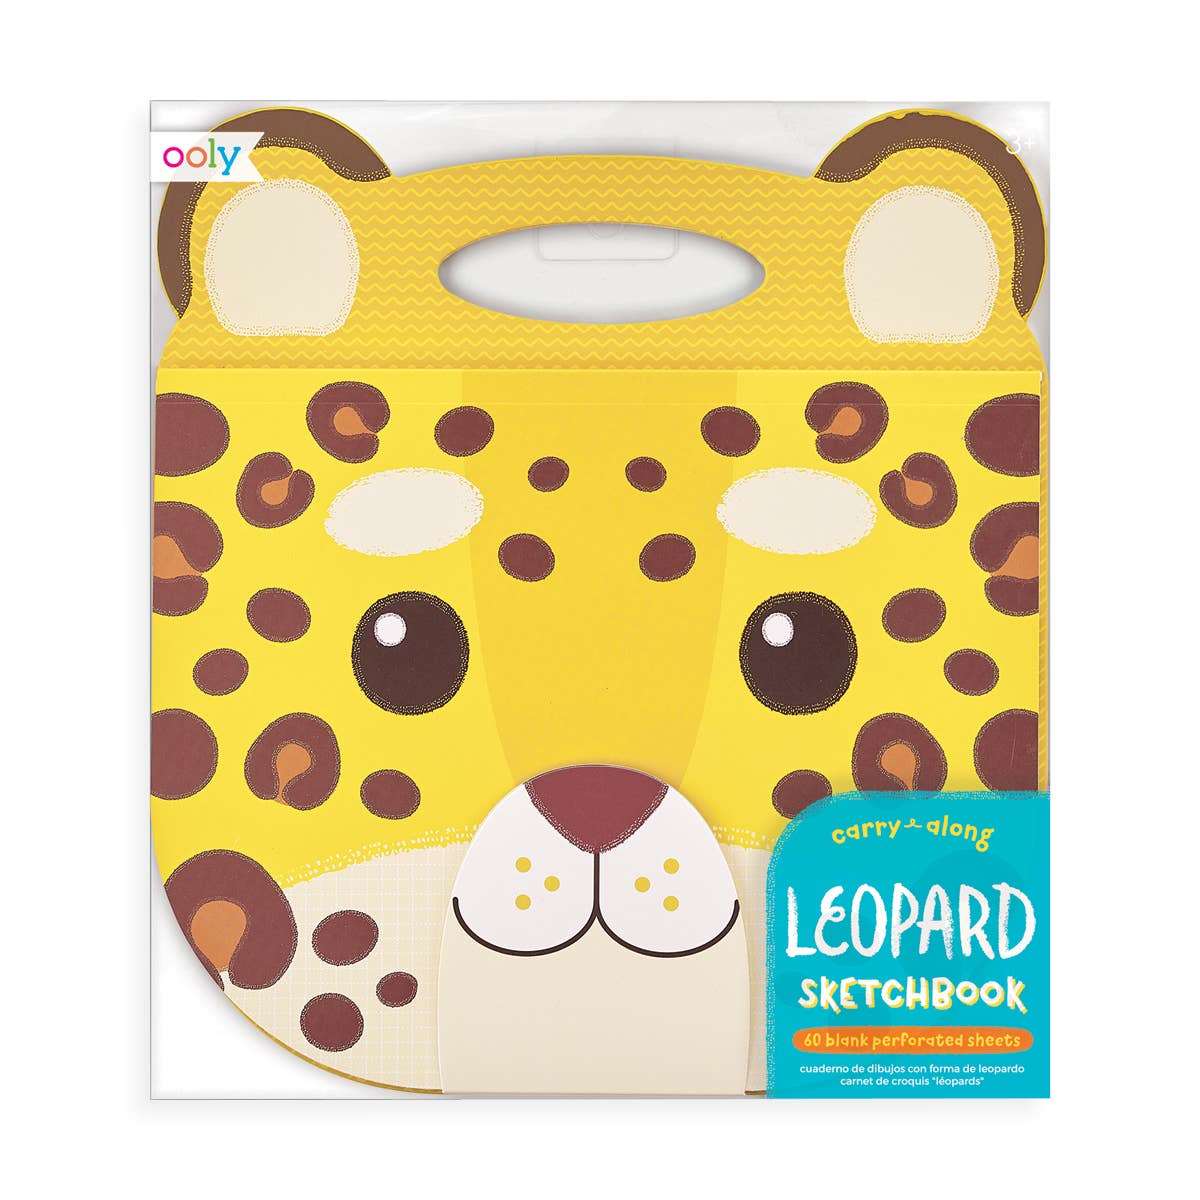 Animal Carry Along Kid's Sketchbook - Leopard